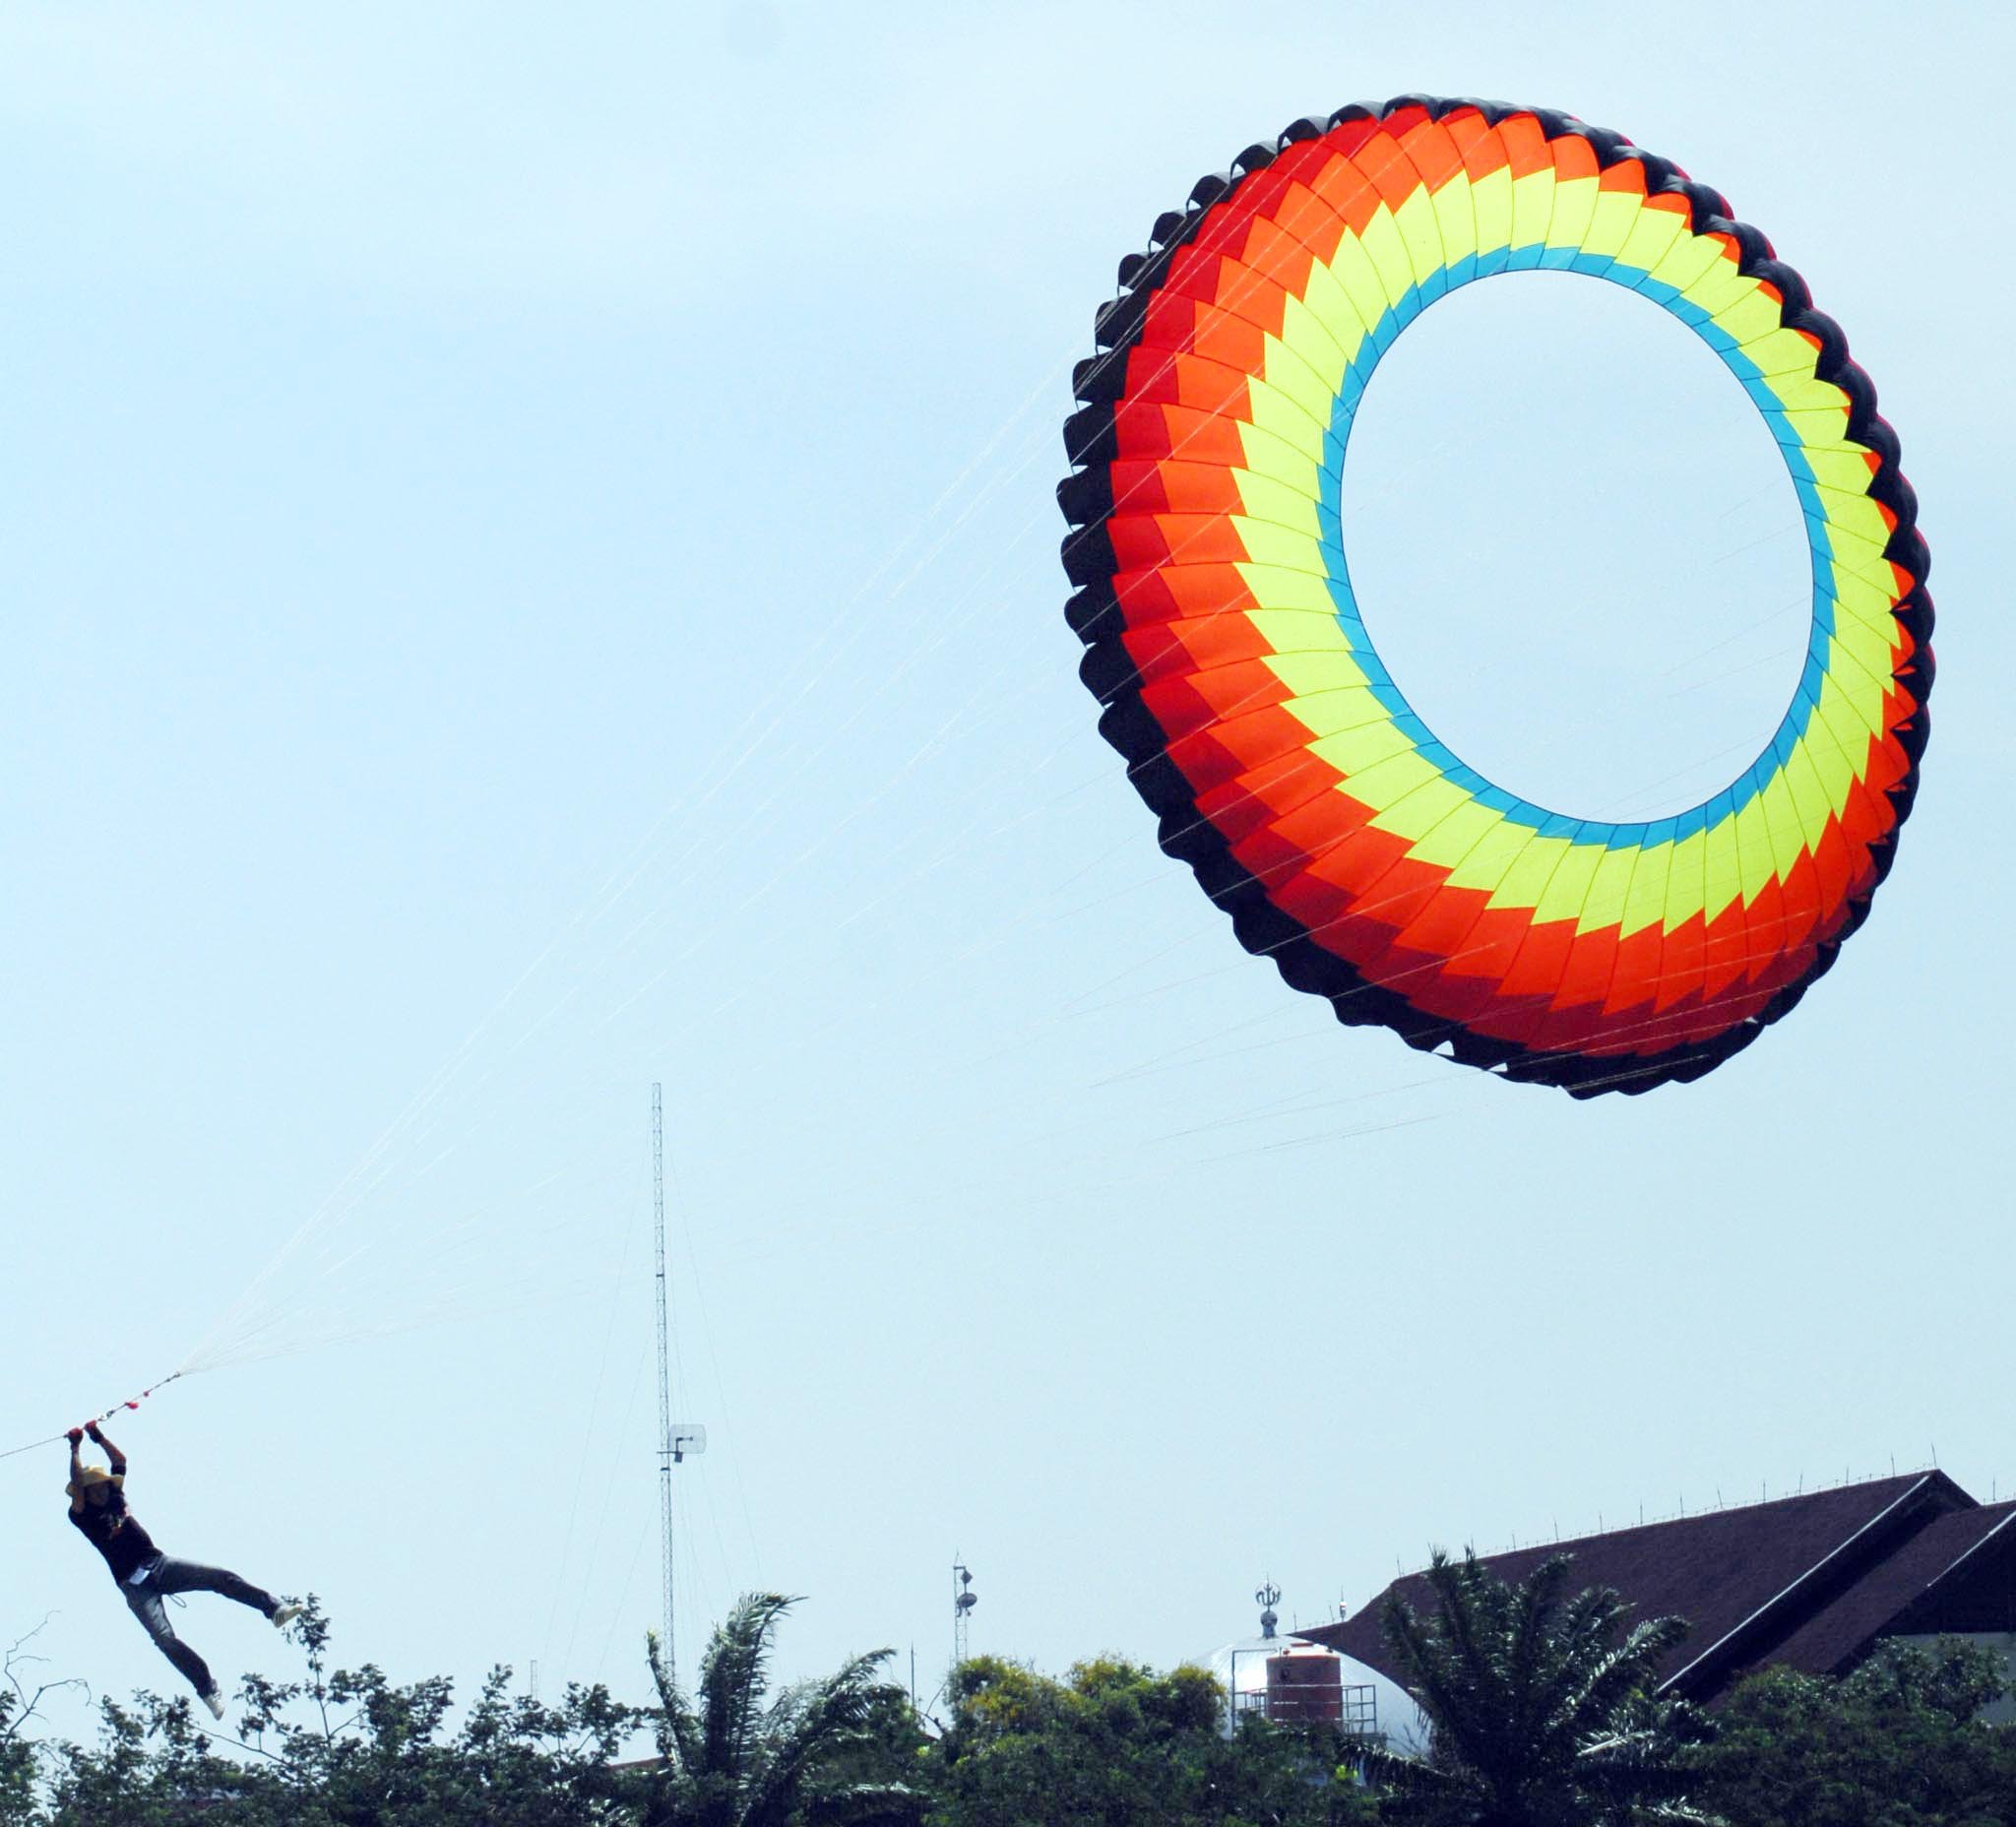  FOTO: Terseret layang-layang saat festival di Banda Aceh